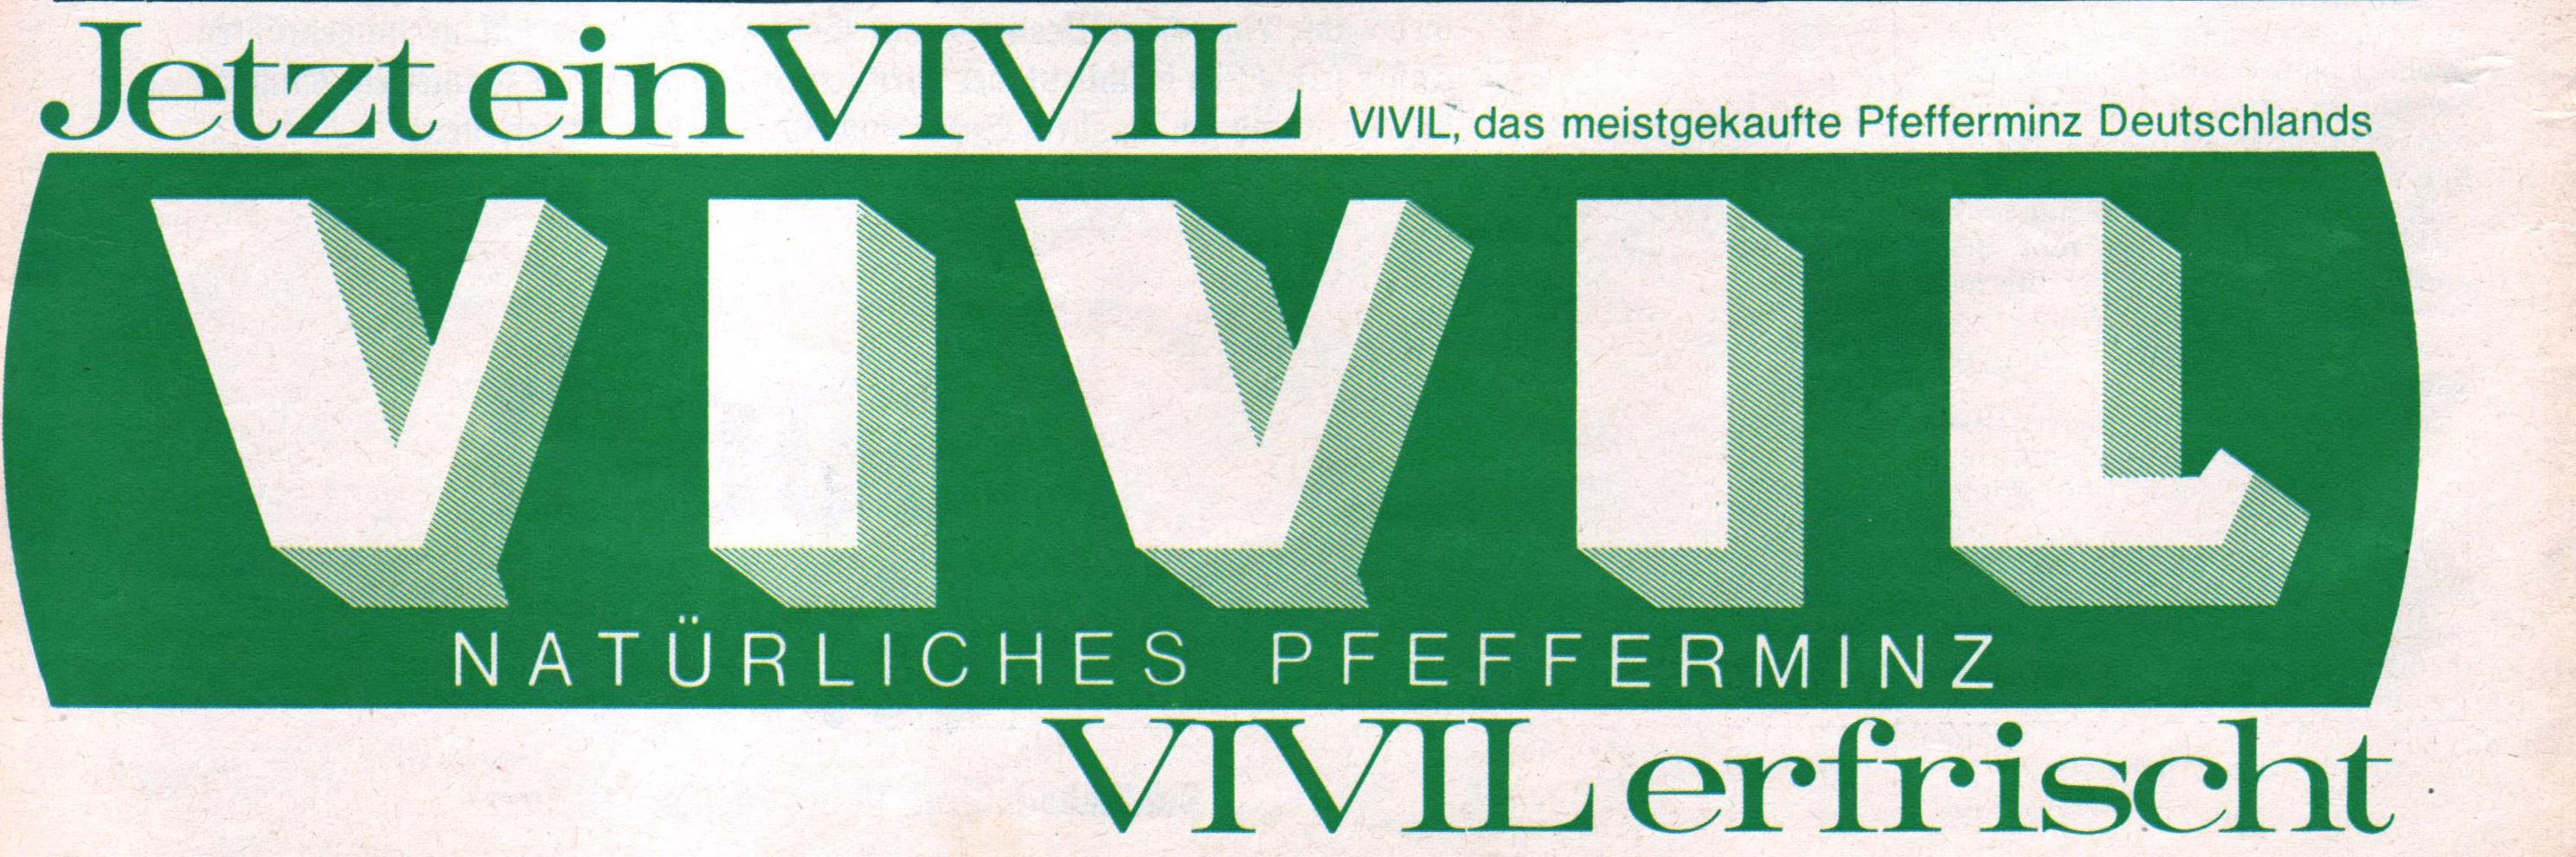 Vivil 1968 0.jpg